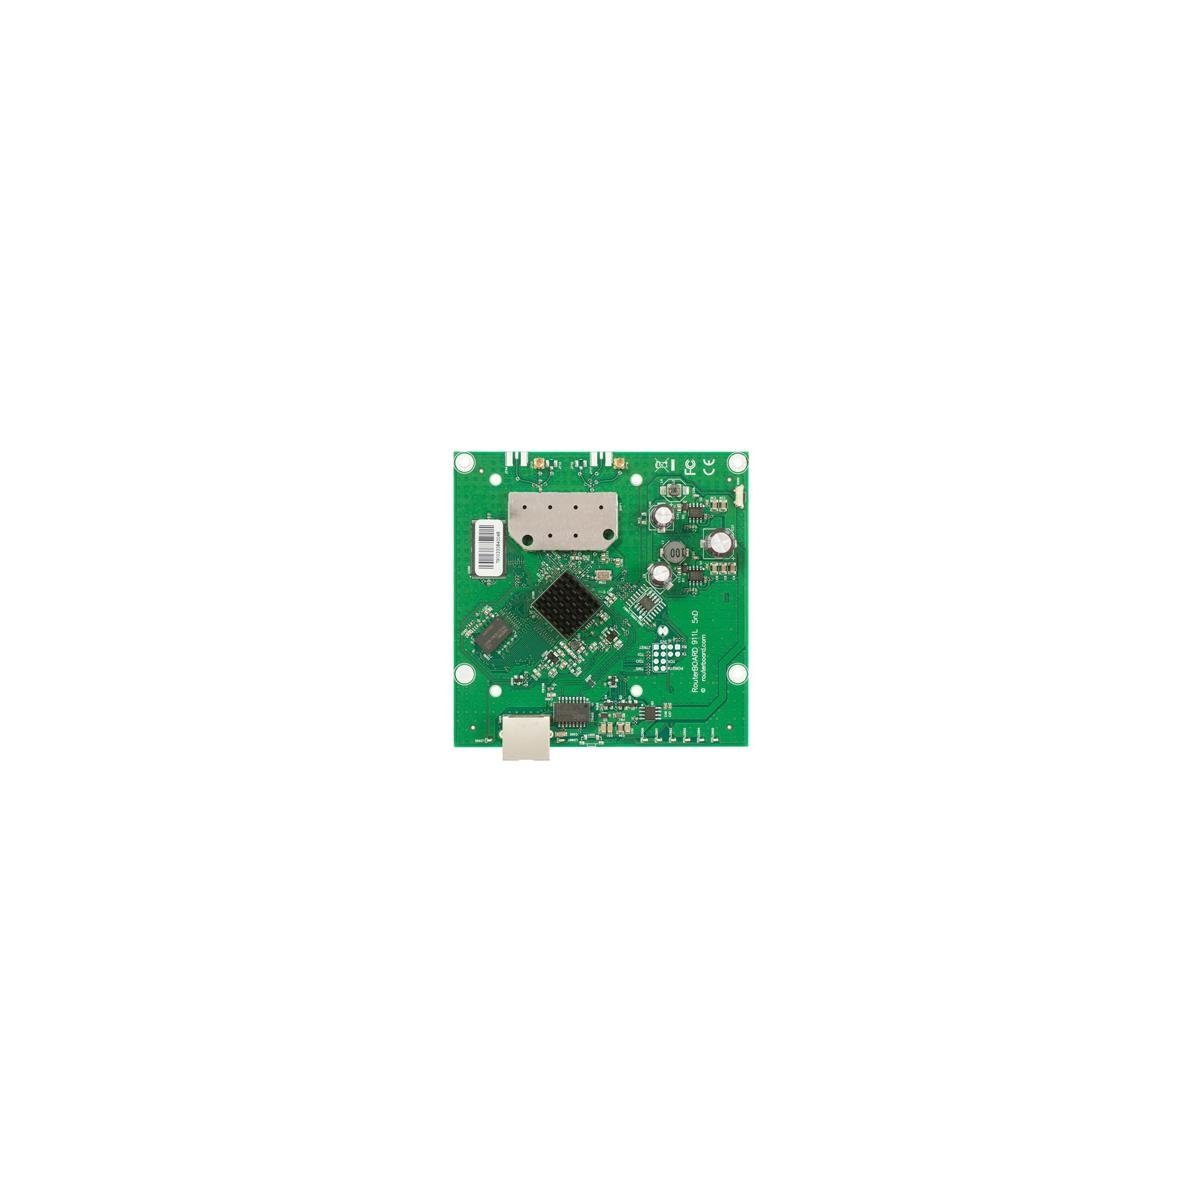 MikroTik RB911-5HND - RouterBOARD, 64 MB DDR2, 5 GHz, 26 dBm Netzwerk-Switch